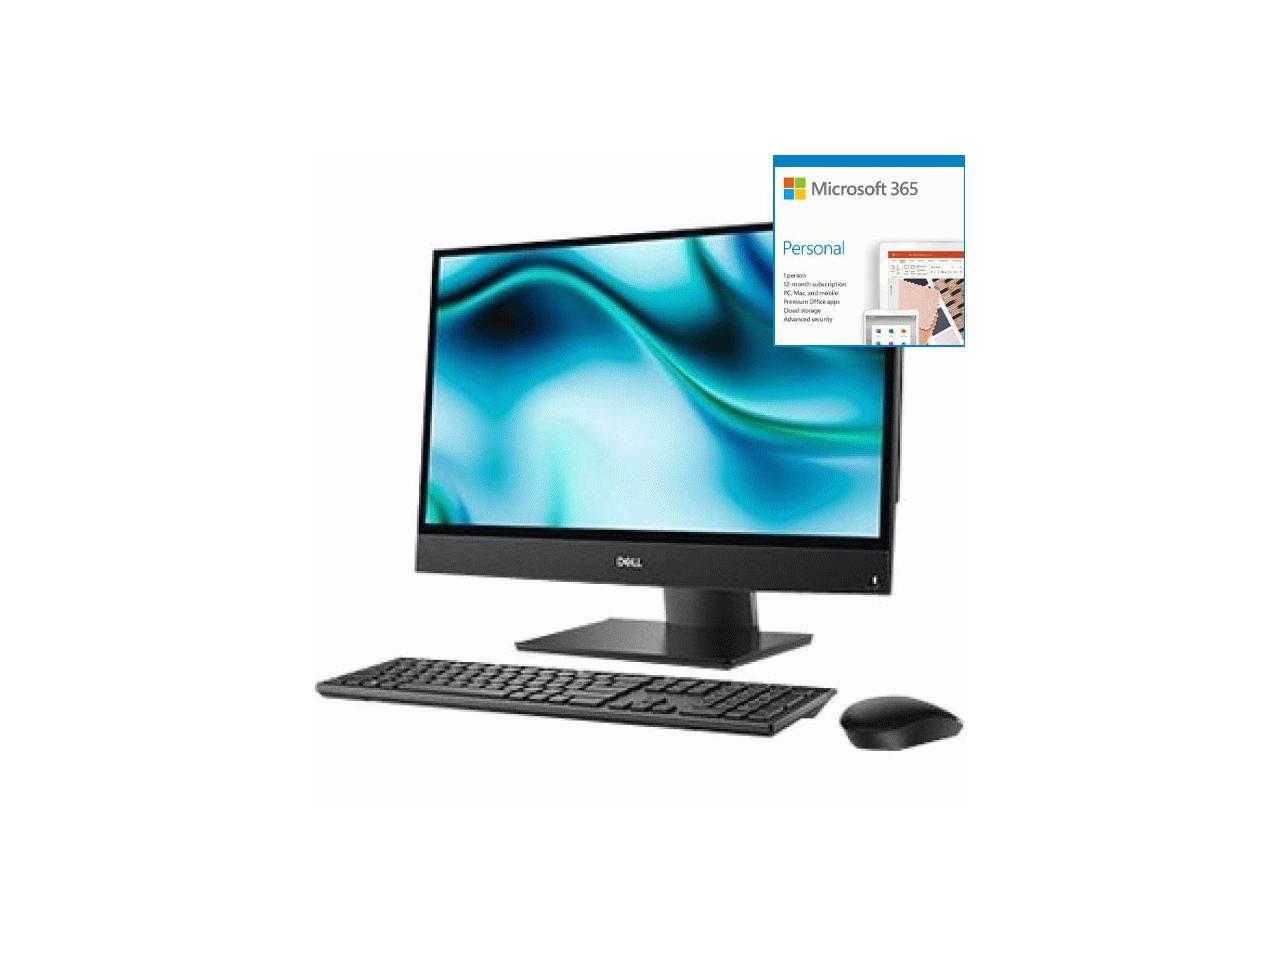 Dell OptiPlex 3000 3280 All-in-One Computer - Intel Core i5 + Microsoft 365 Bundle